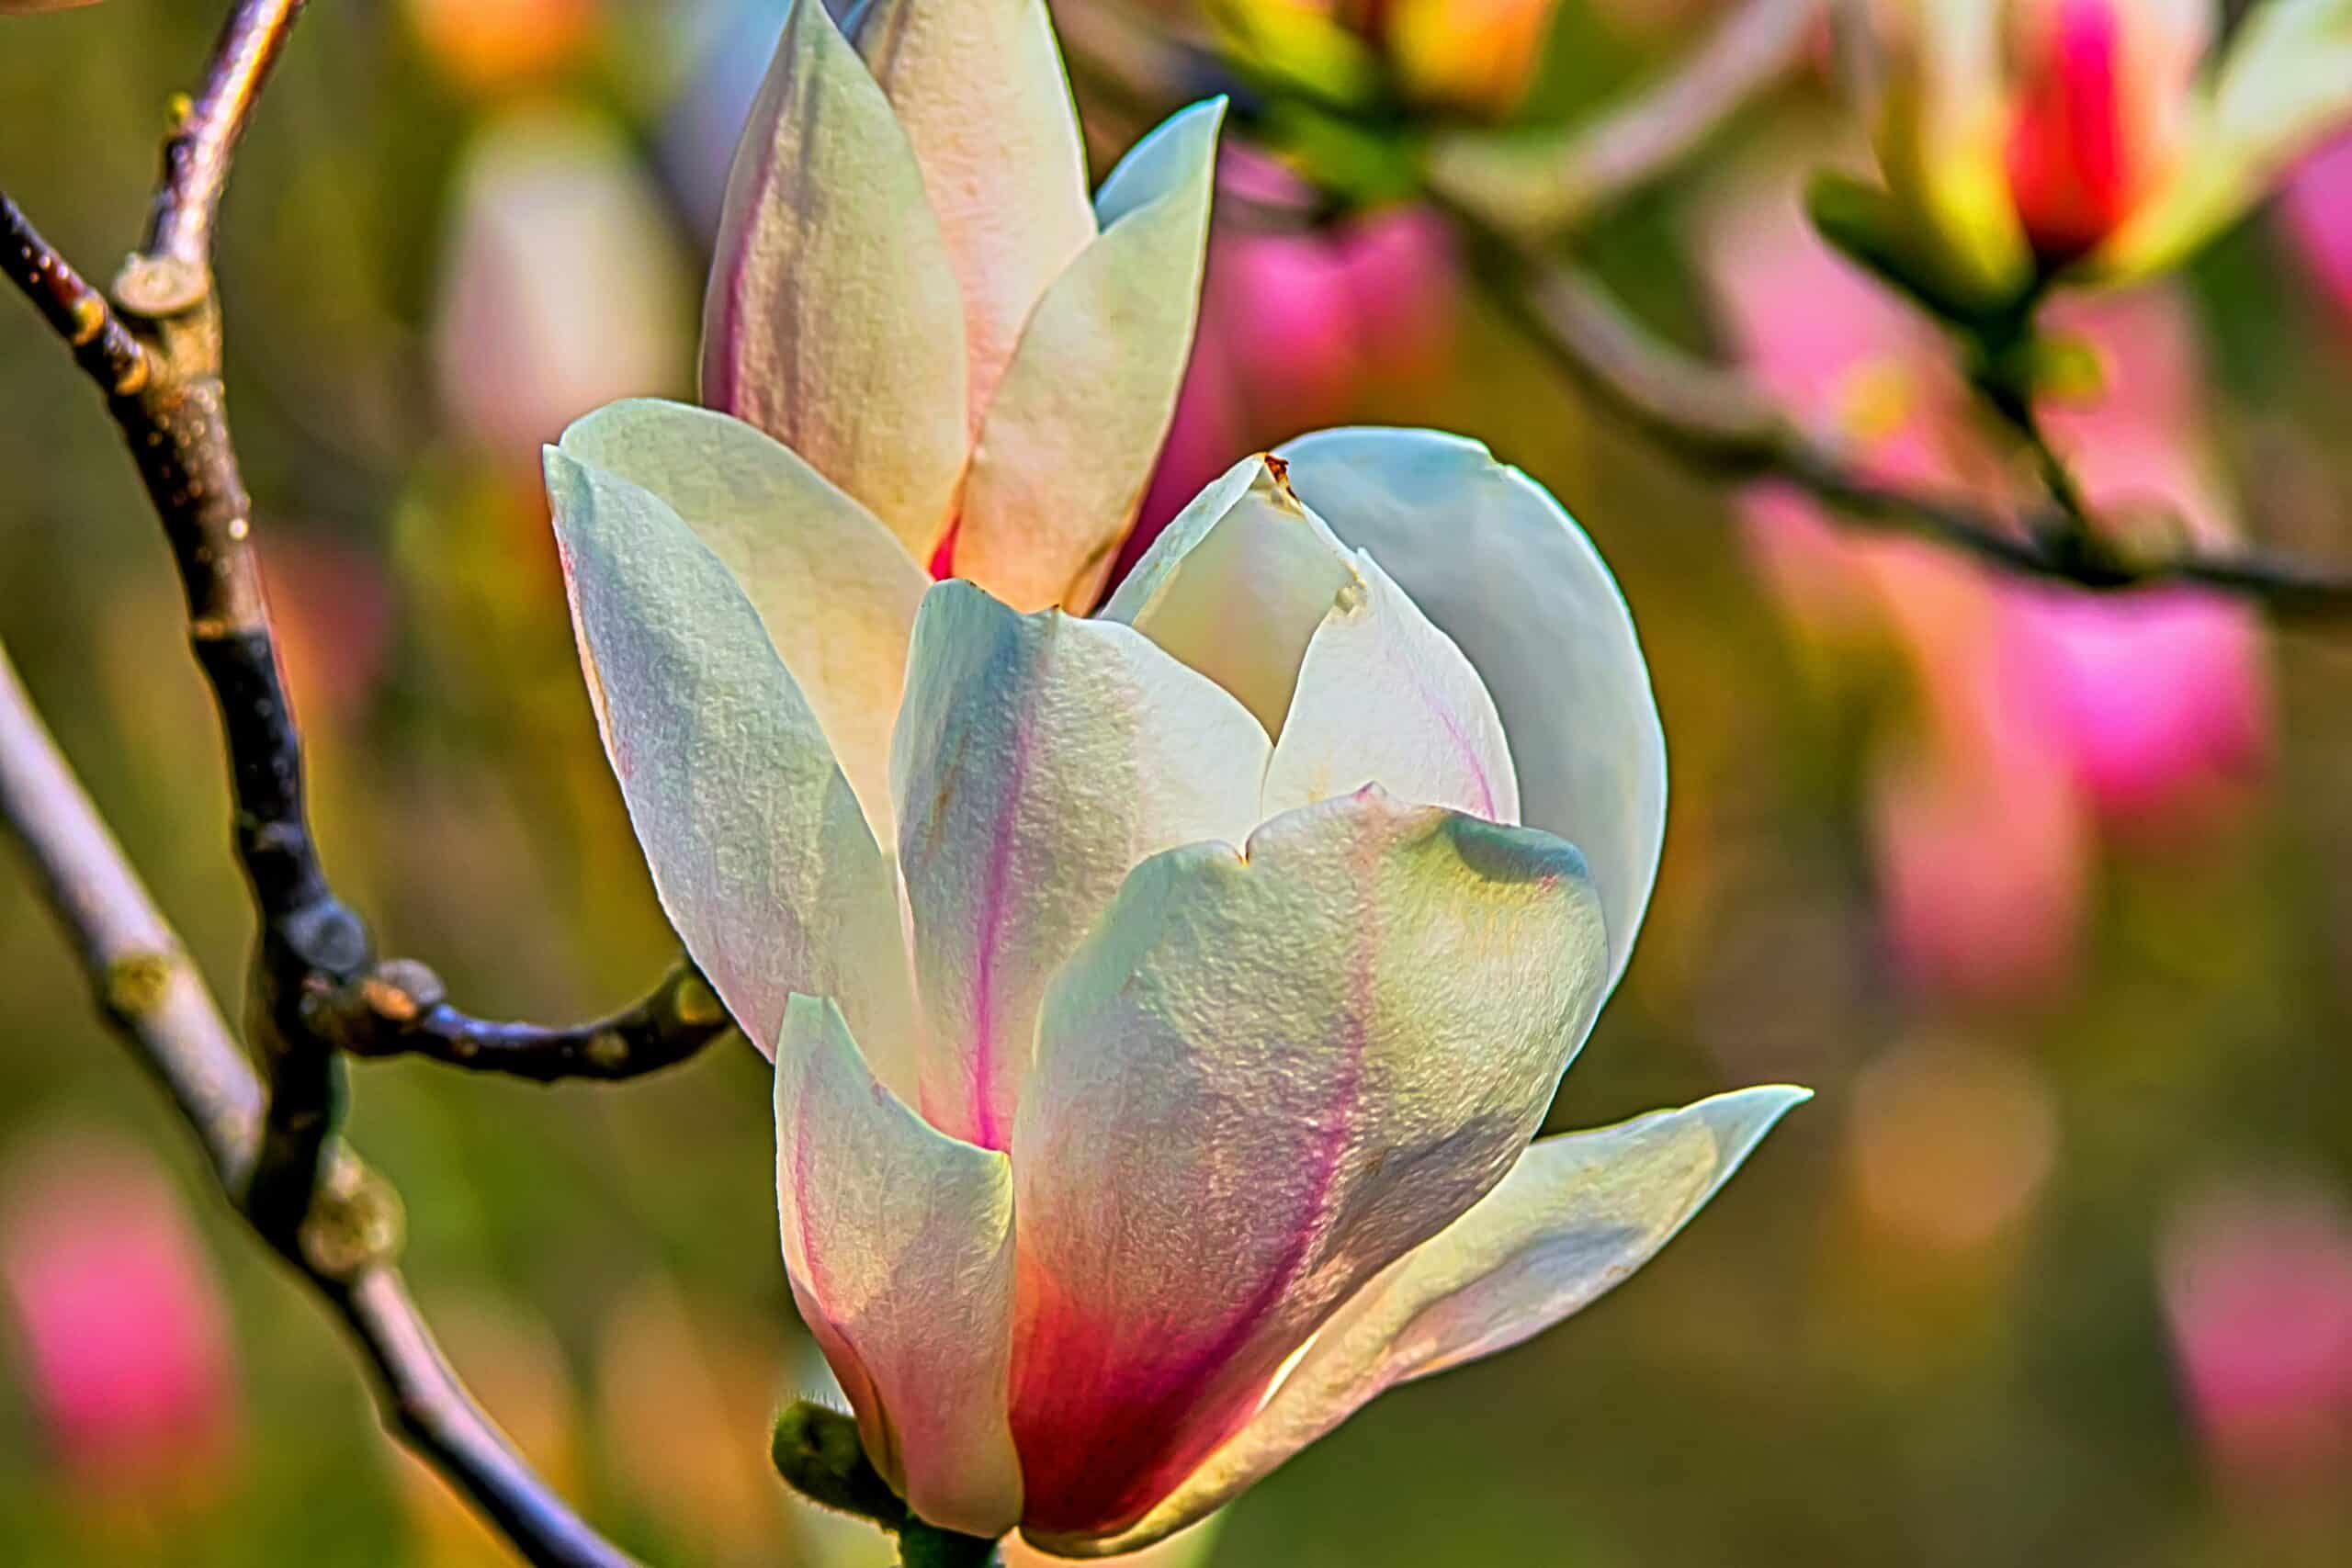 ontdek de schoonheid van magnoliabomen met hun prachtige bloemen en indrukwekkende gestalte. leer meer over verschillende variëteiten, planttips en verzorgingstechnieken voor deze iconische bloeiende bomen.